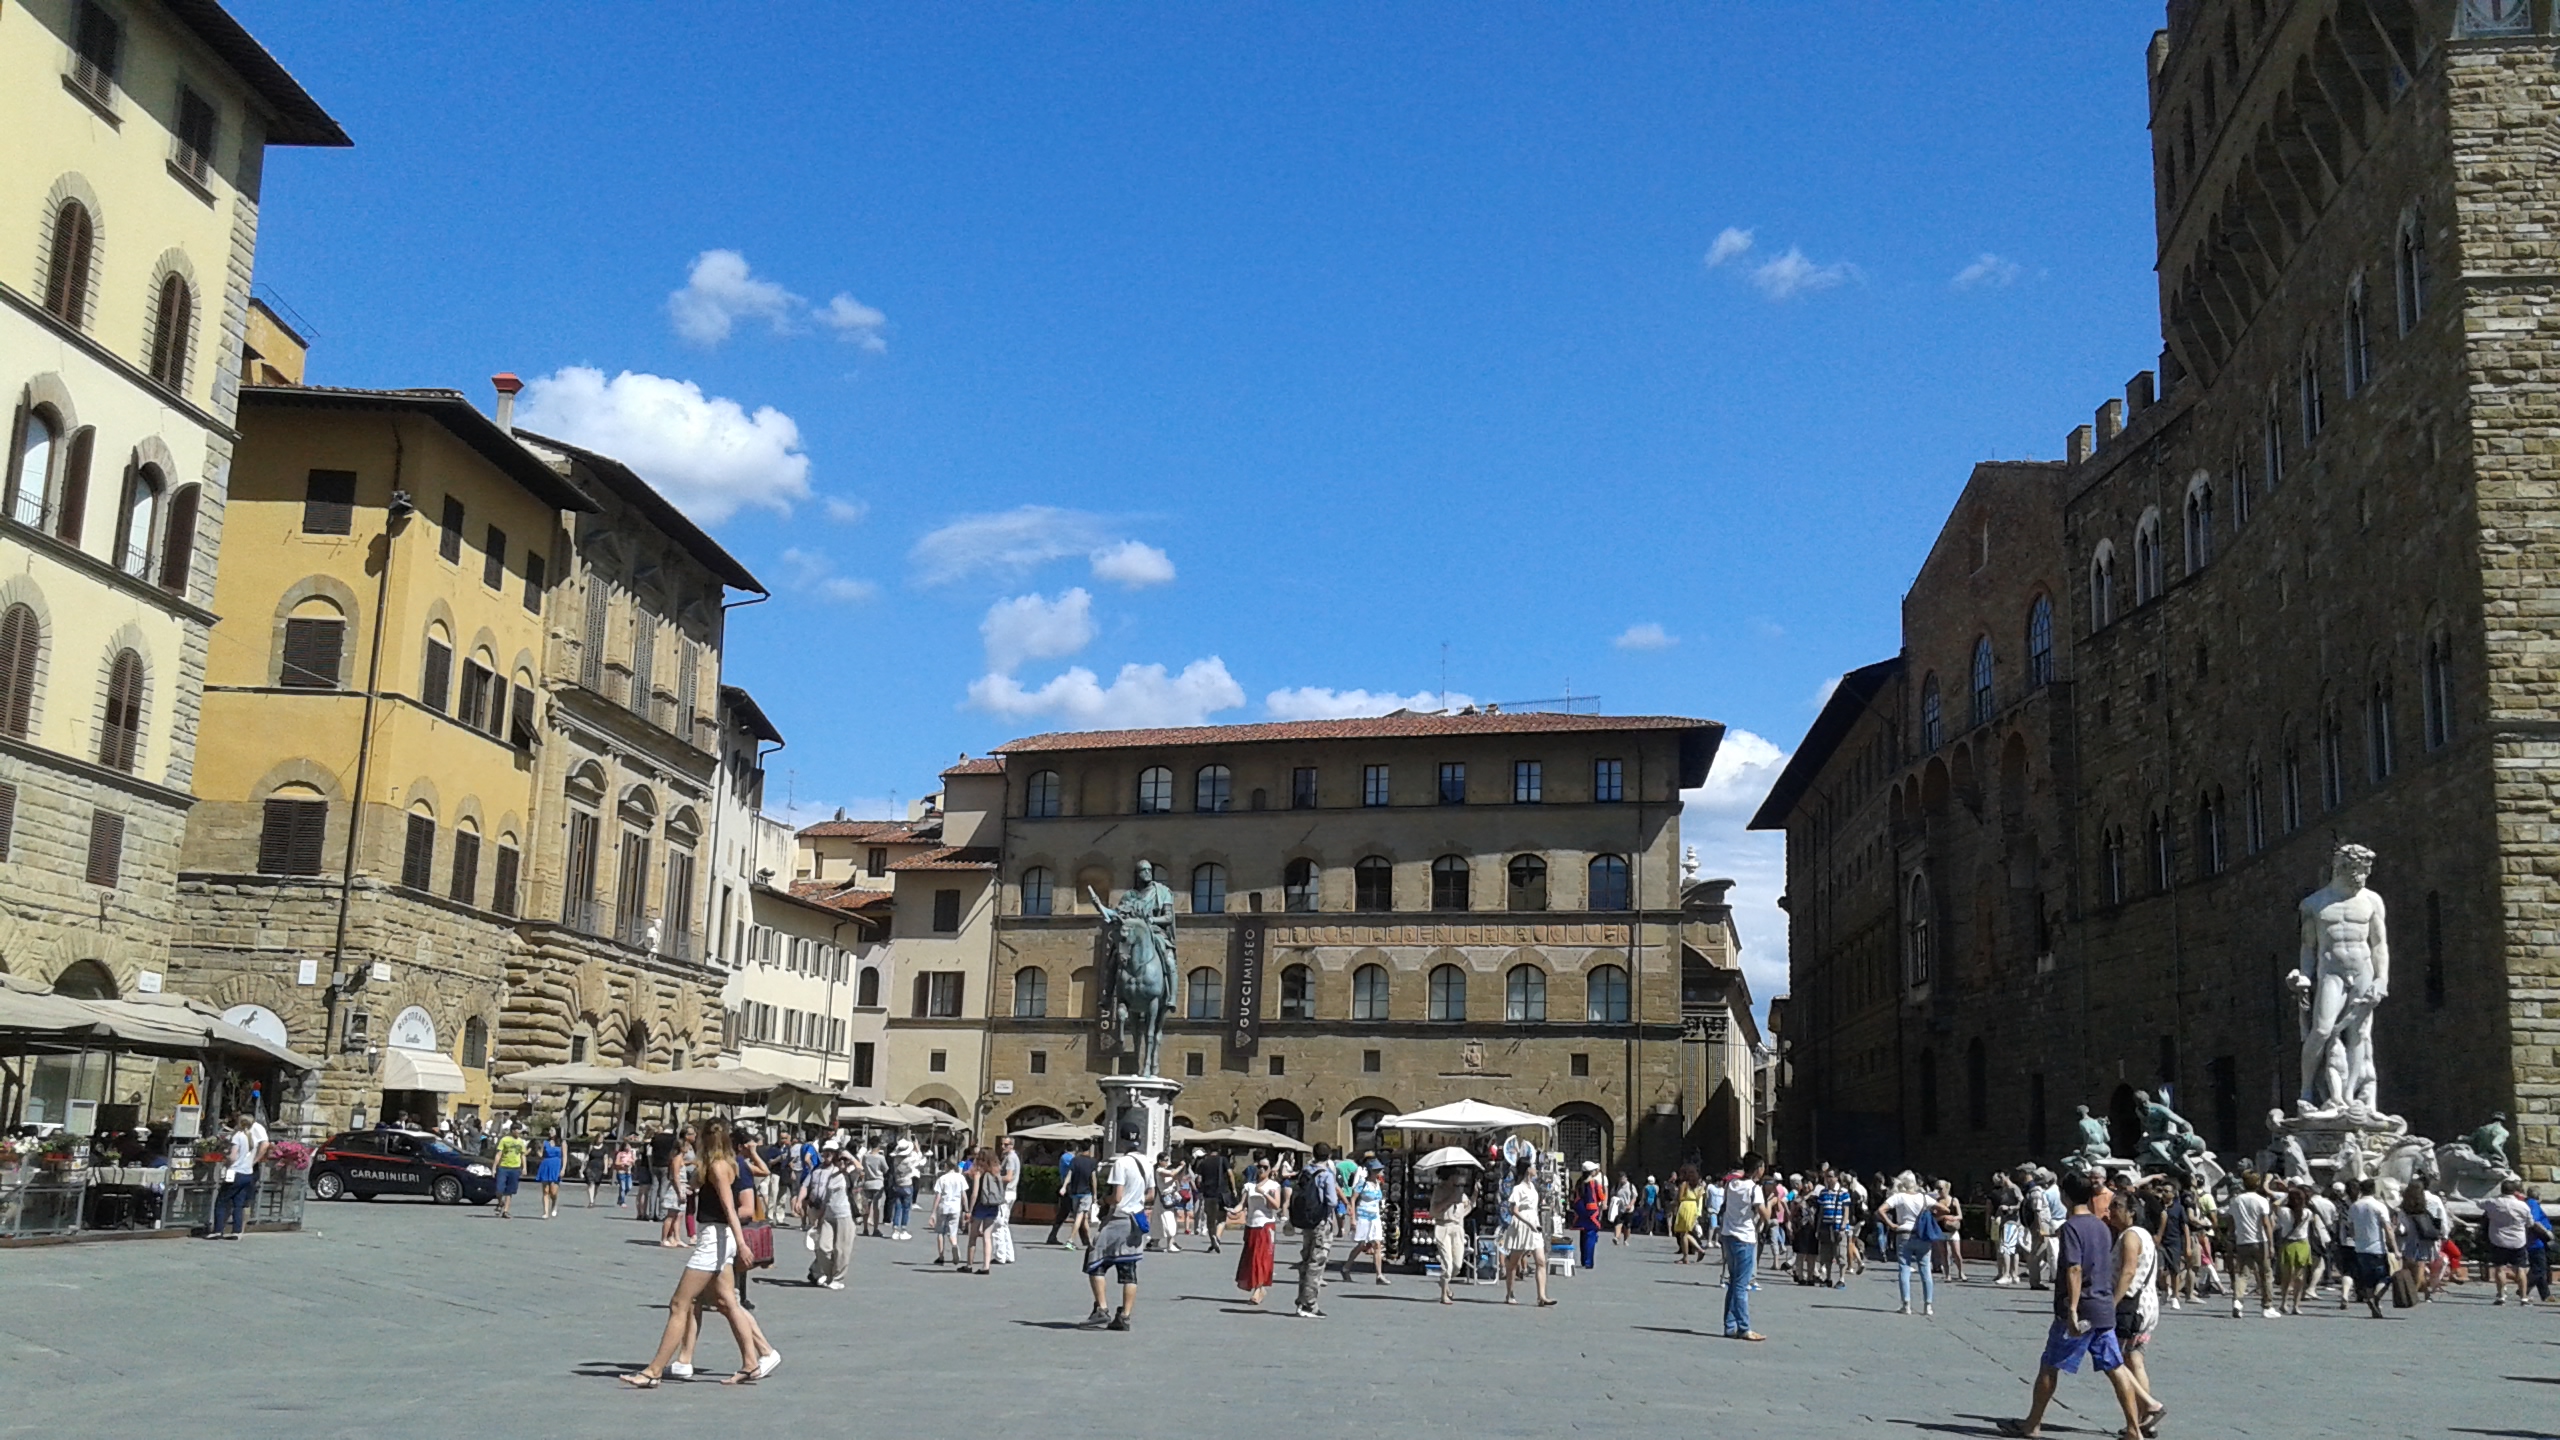 佛罗伦萨市政广场上有很多精美的雕像,代表了文艺复兴时期意大利的